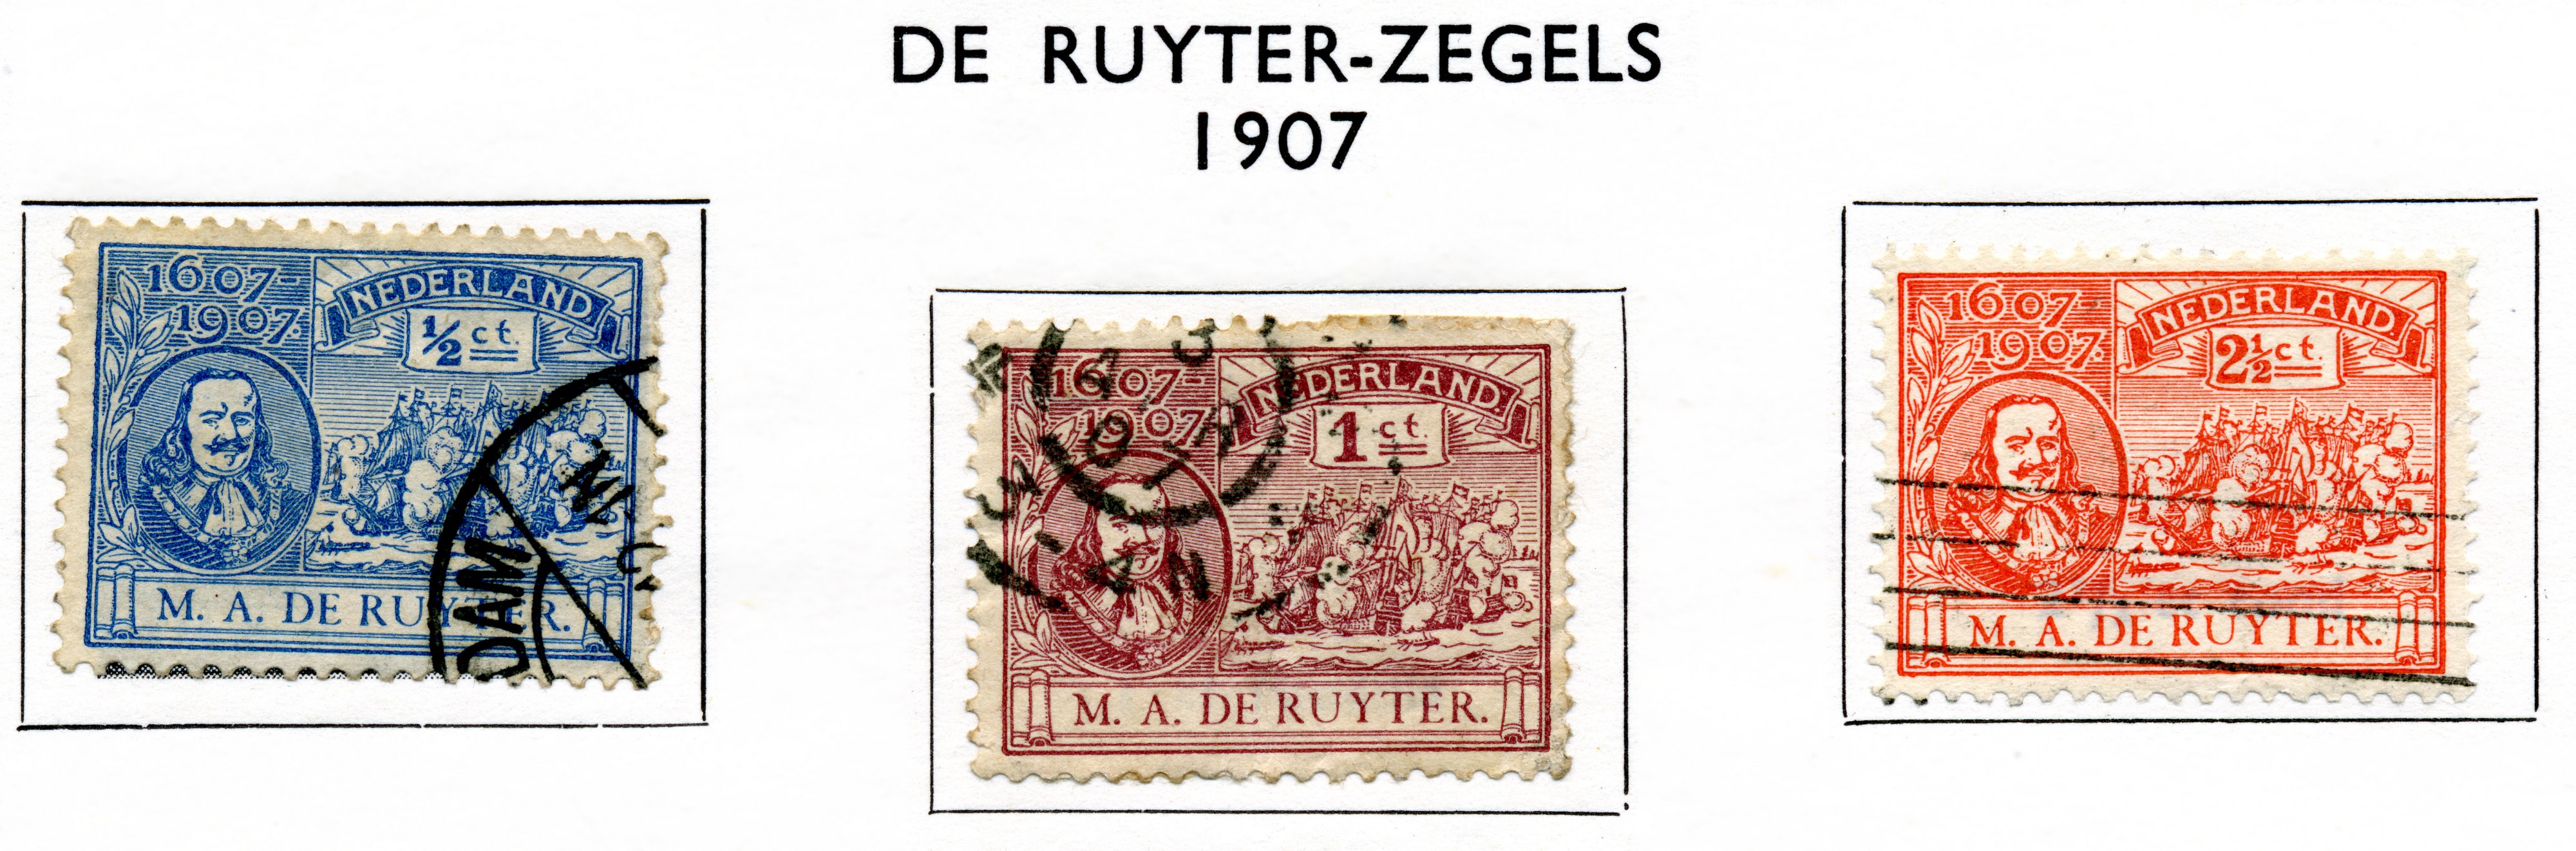 Postzegel 1907 De Ruyter